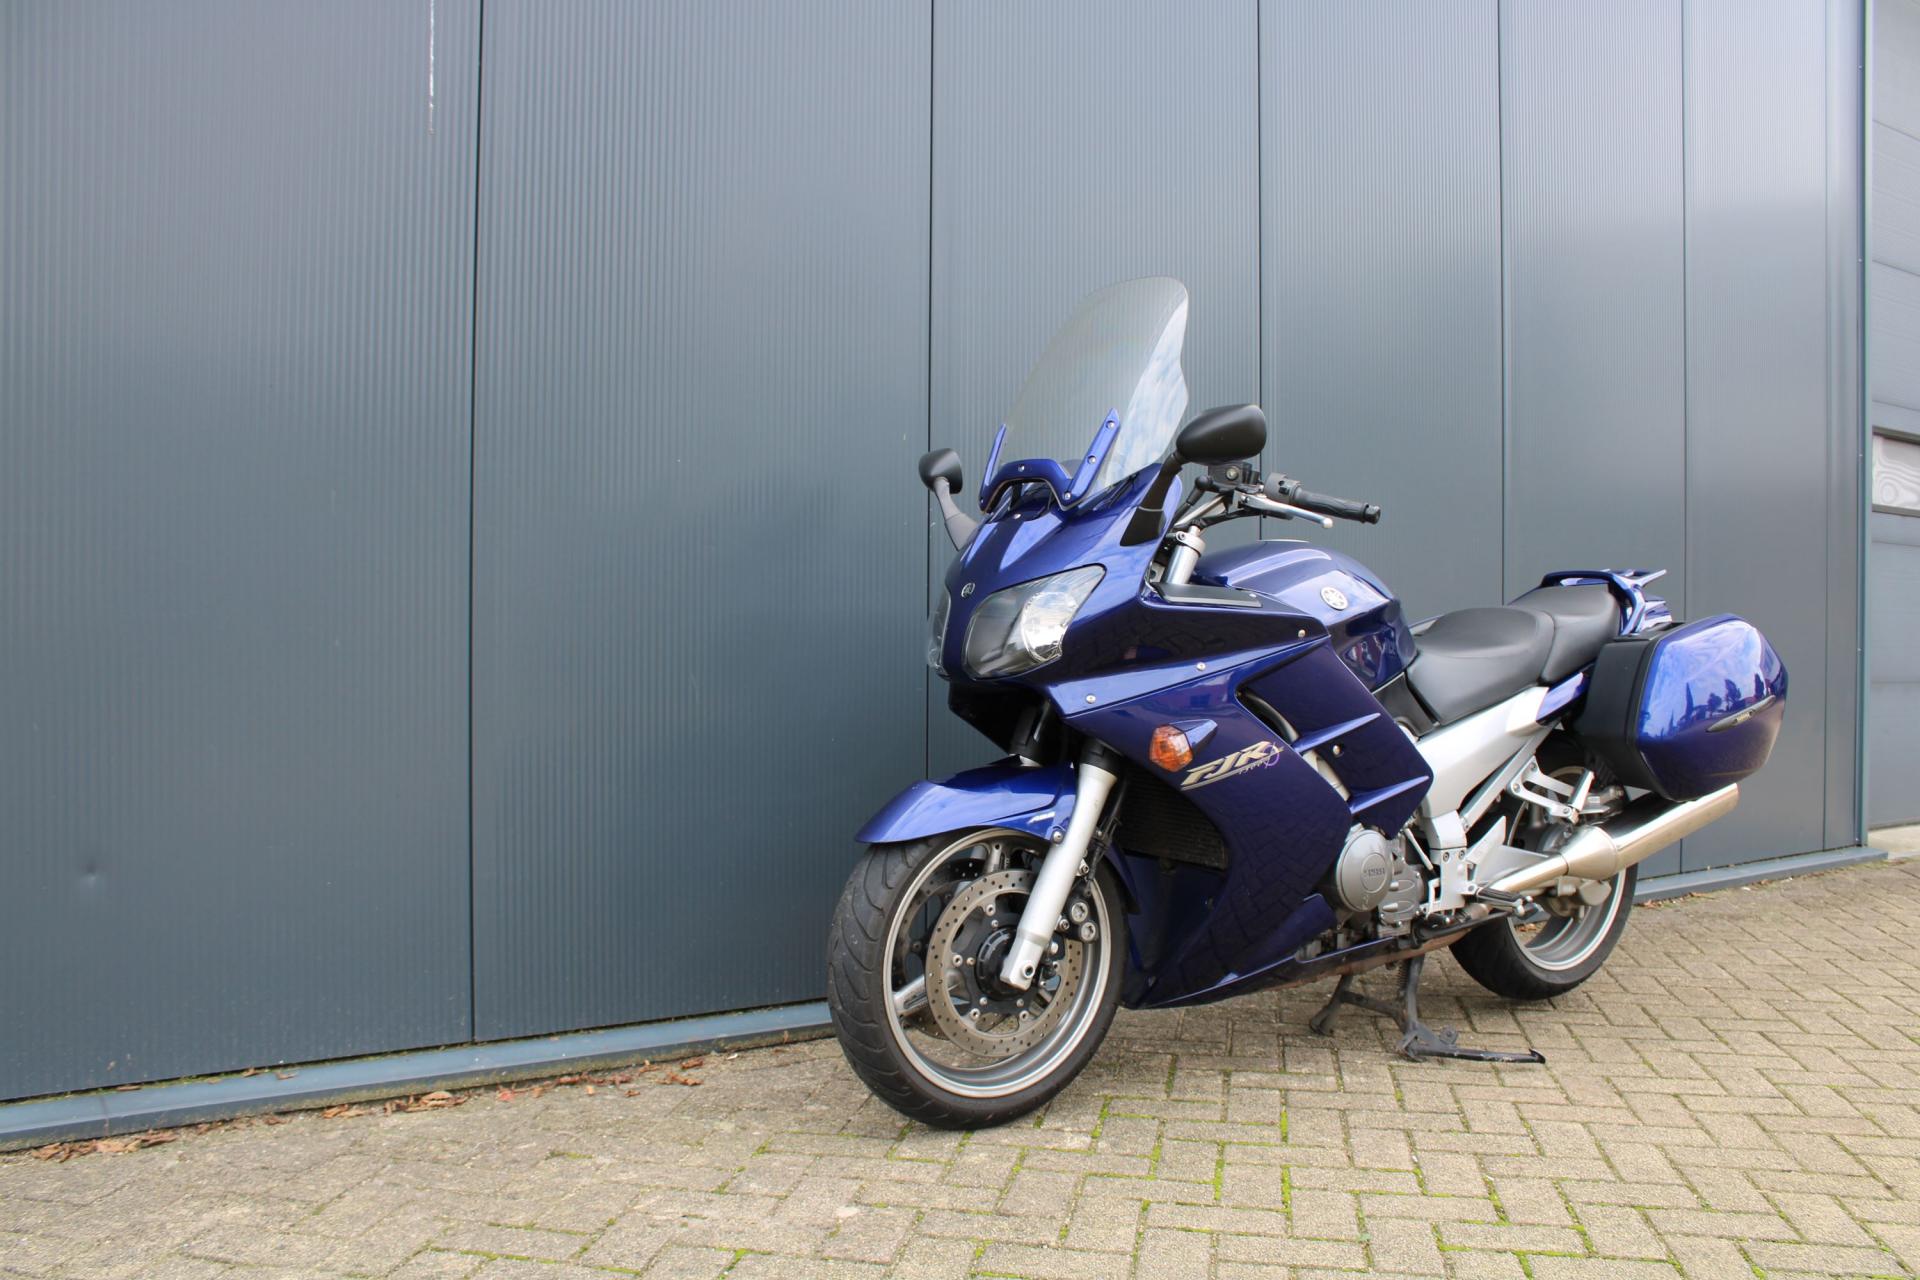 Yamaha FJR 1300 (01.JPG)